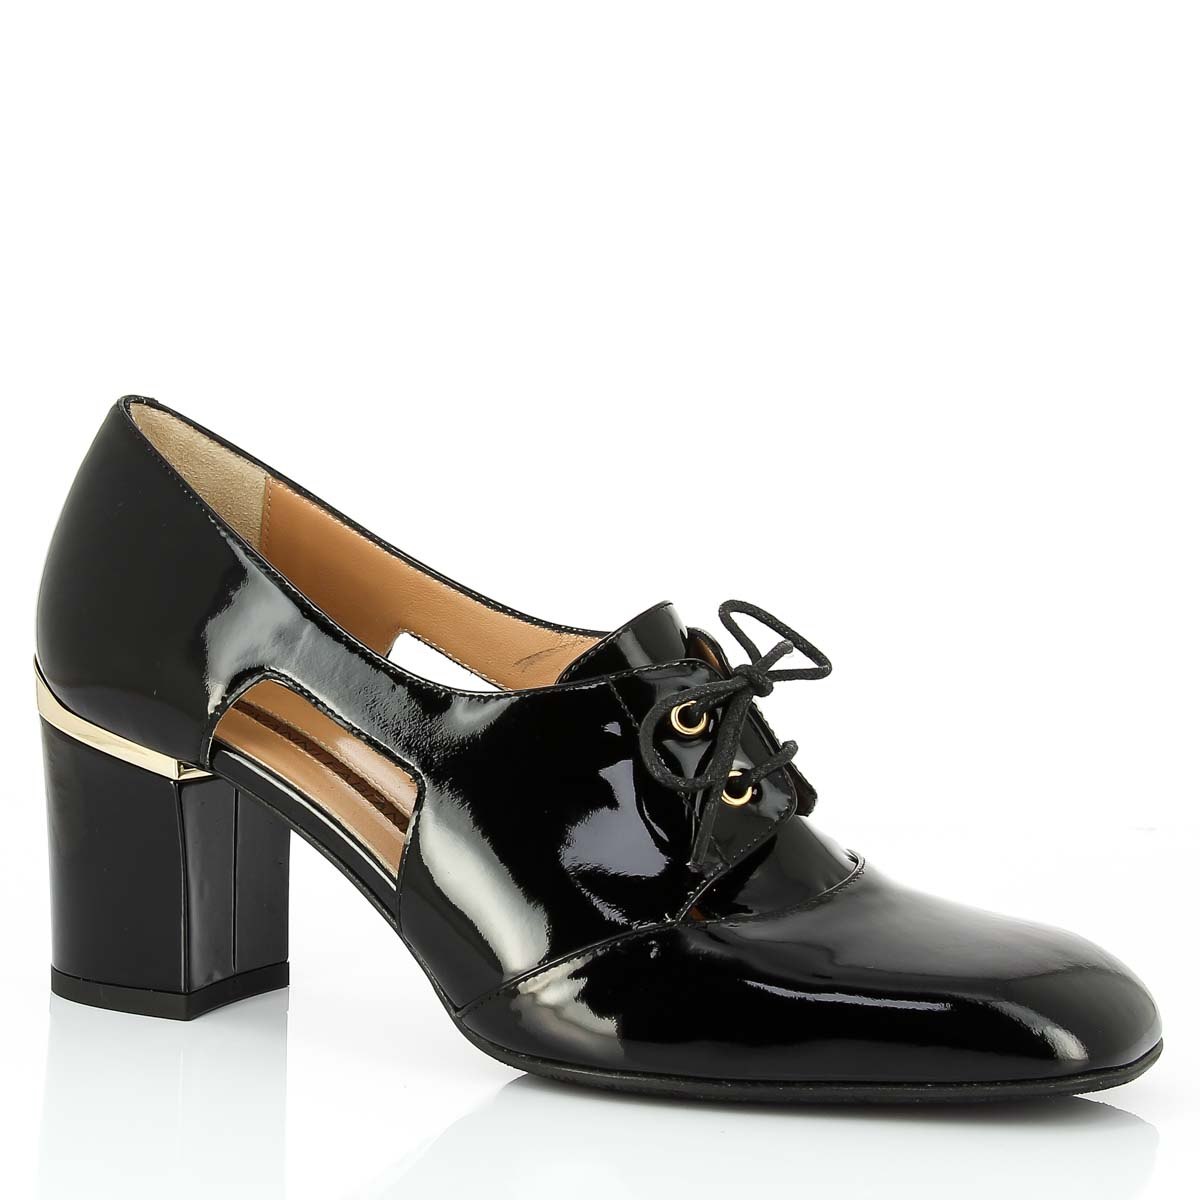 Randevous обувь интернет магазин. Джованни фабиани обувь женская. Mario Bruni туфли (39, черный). Женские туфли фабиани в Рандеву. Итальянская обувь Марино фабиани.